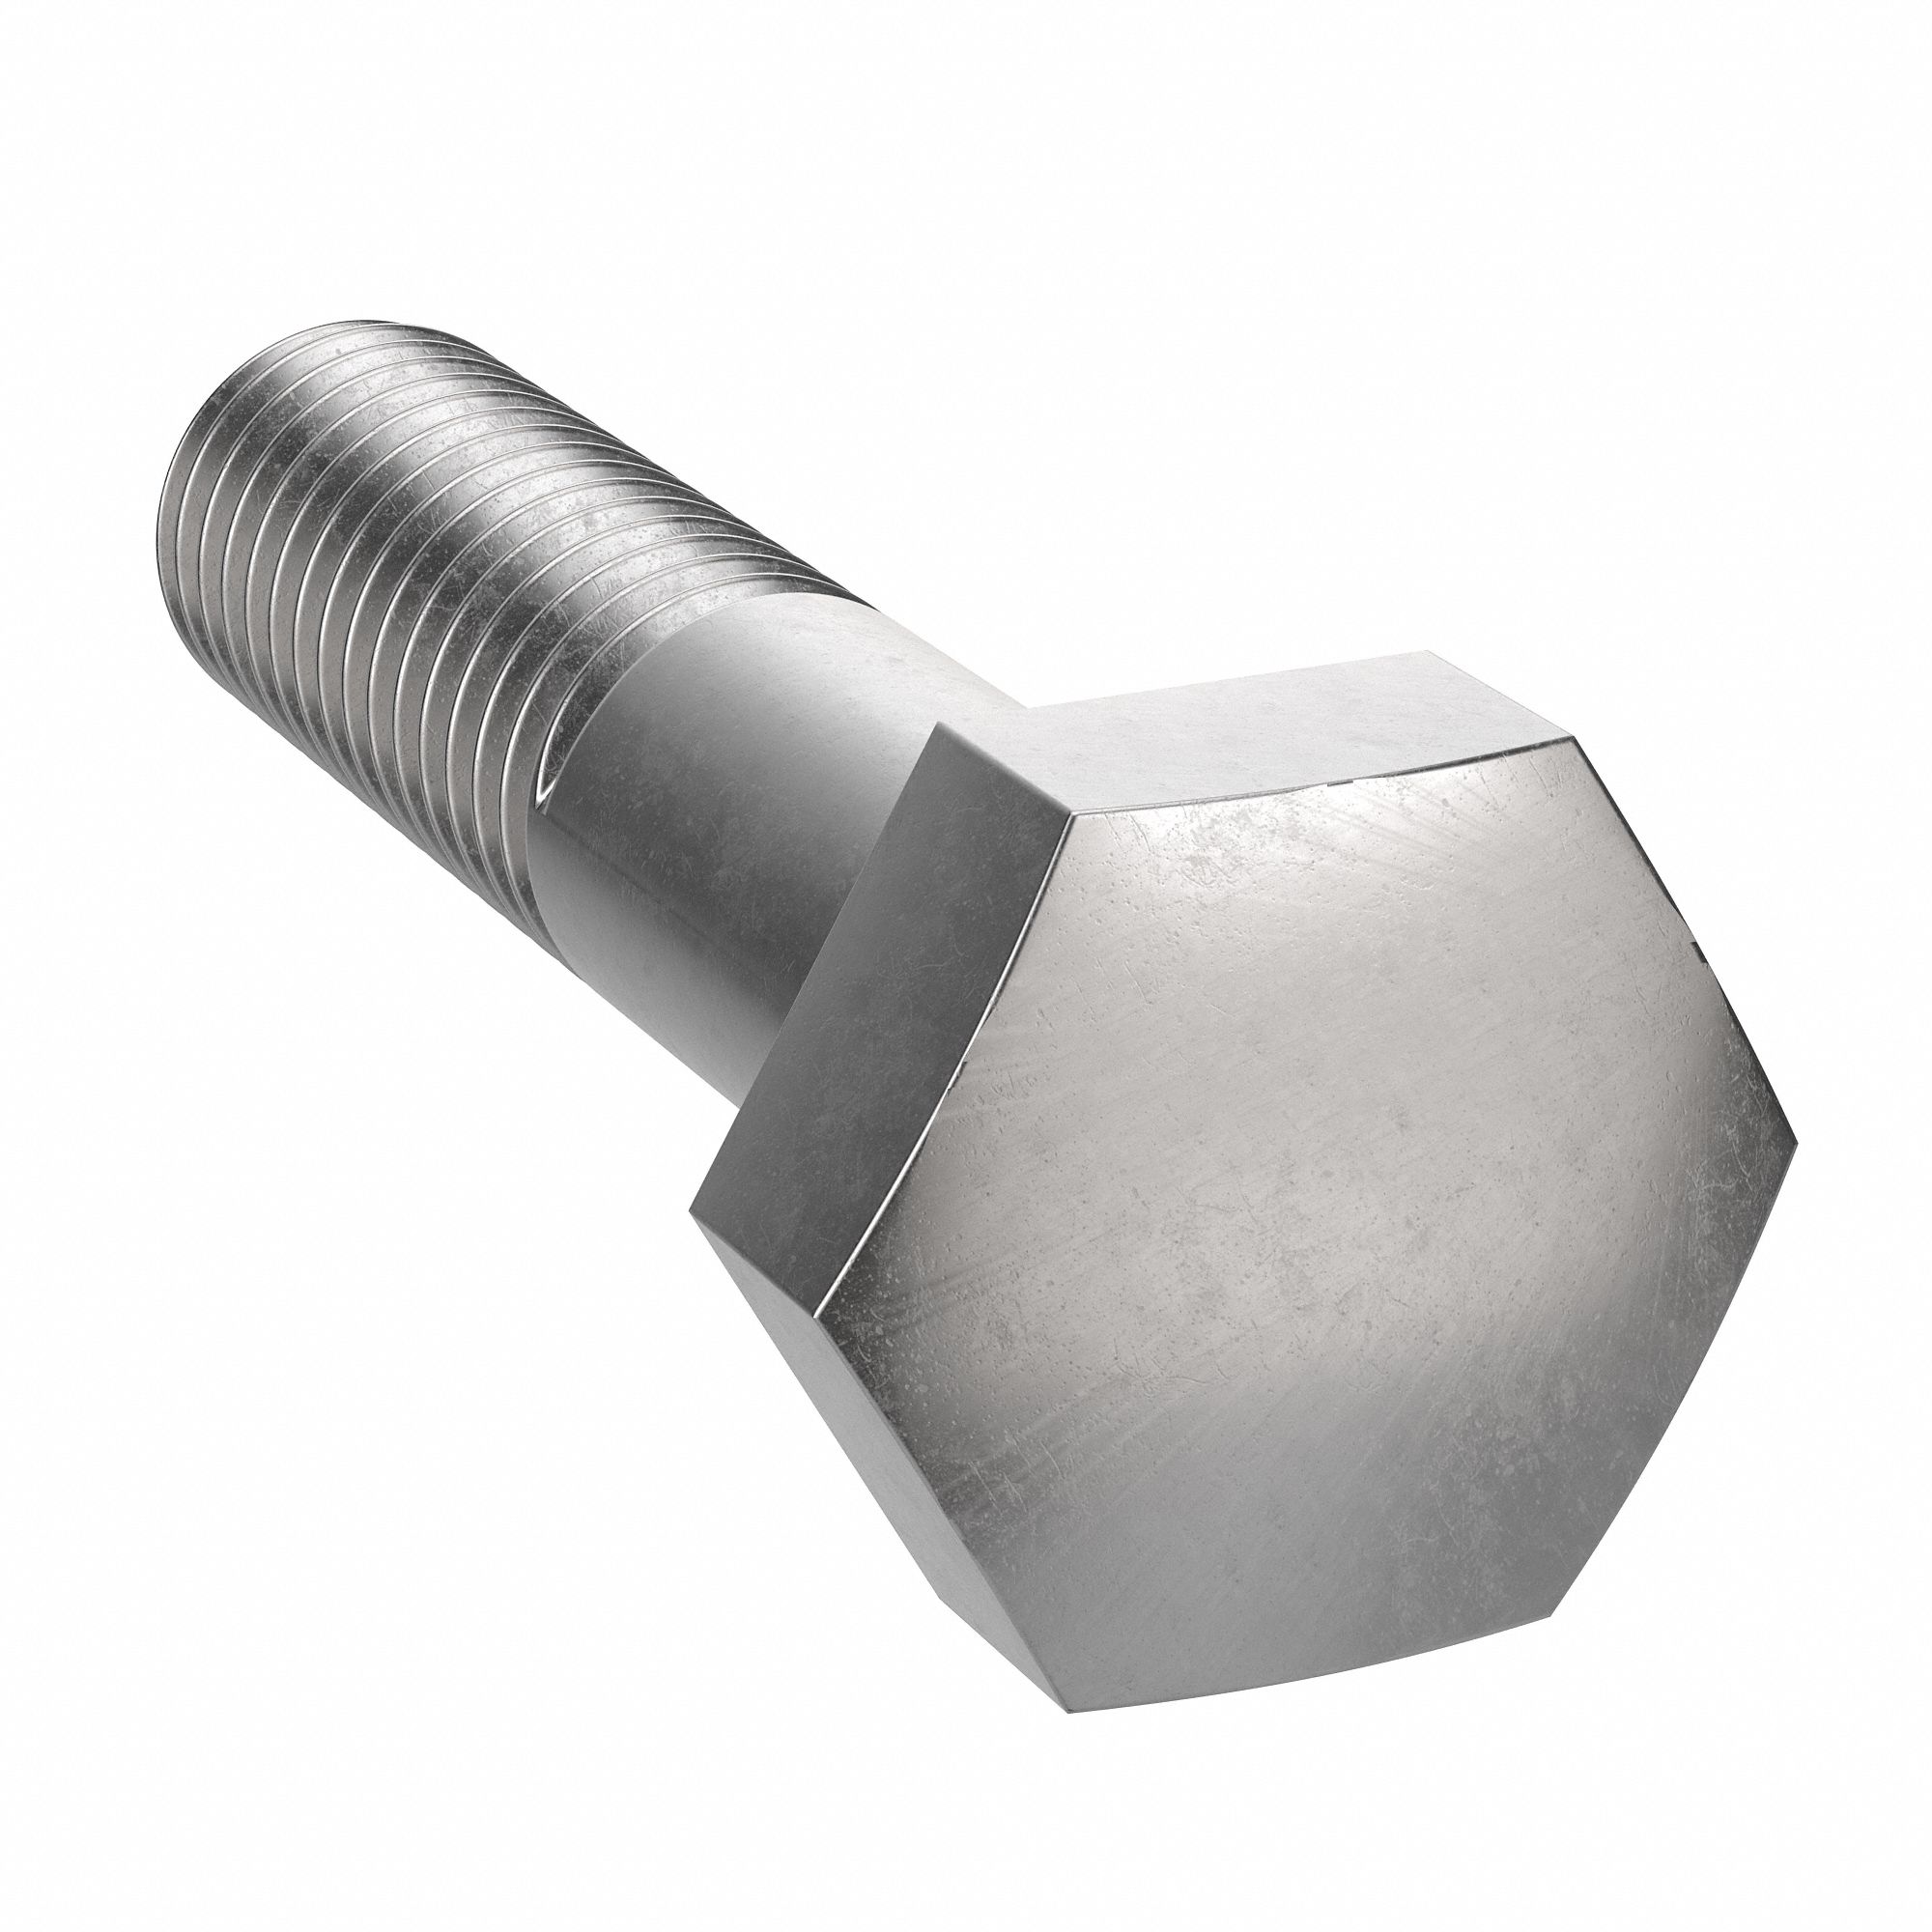 Socket Head Cap Screws 12.9 Alloy Steel Black Ox M12 12mm x 1.75 x 65mm  Qty 5